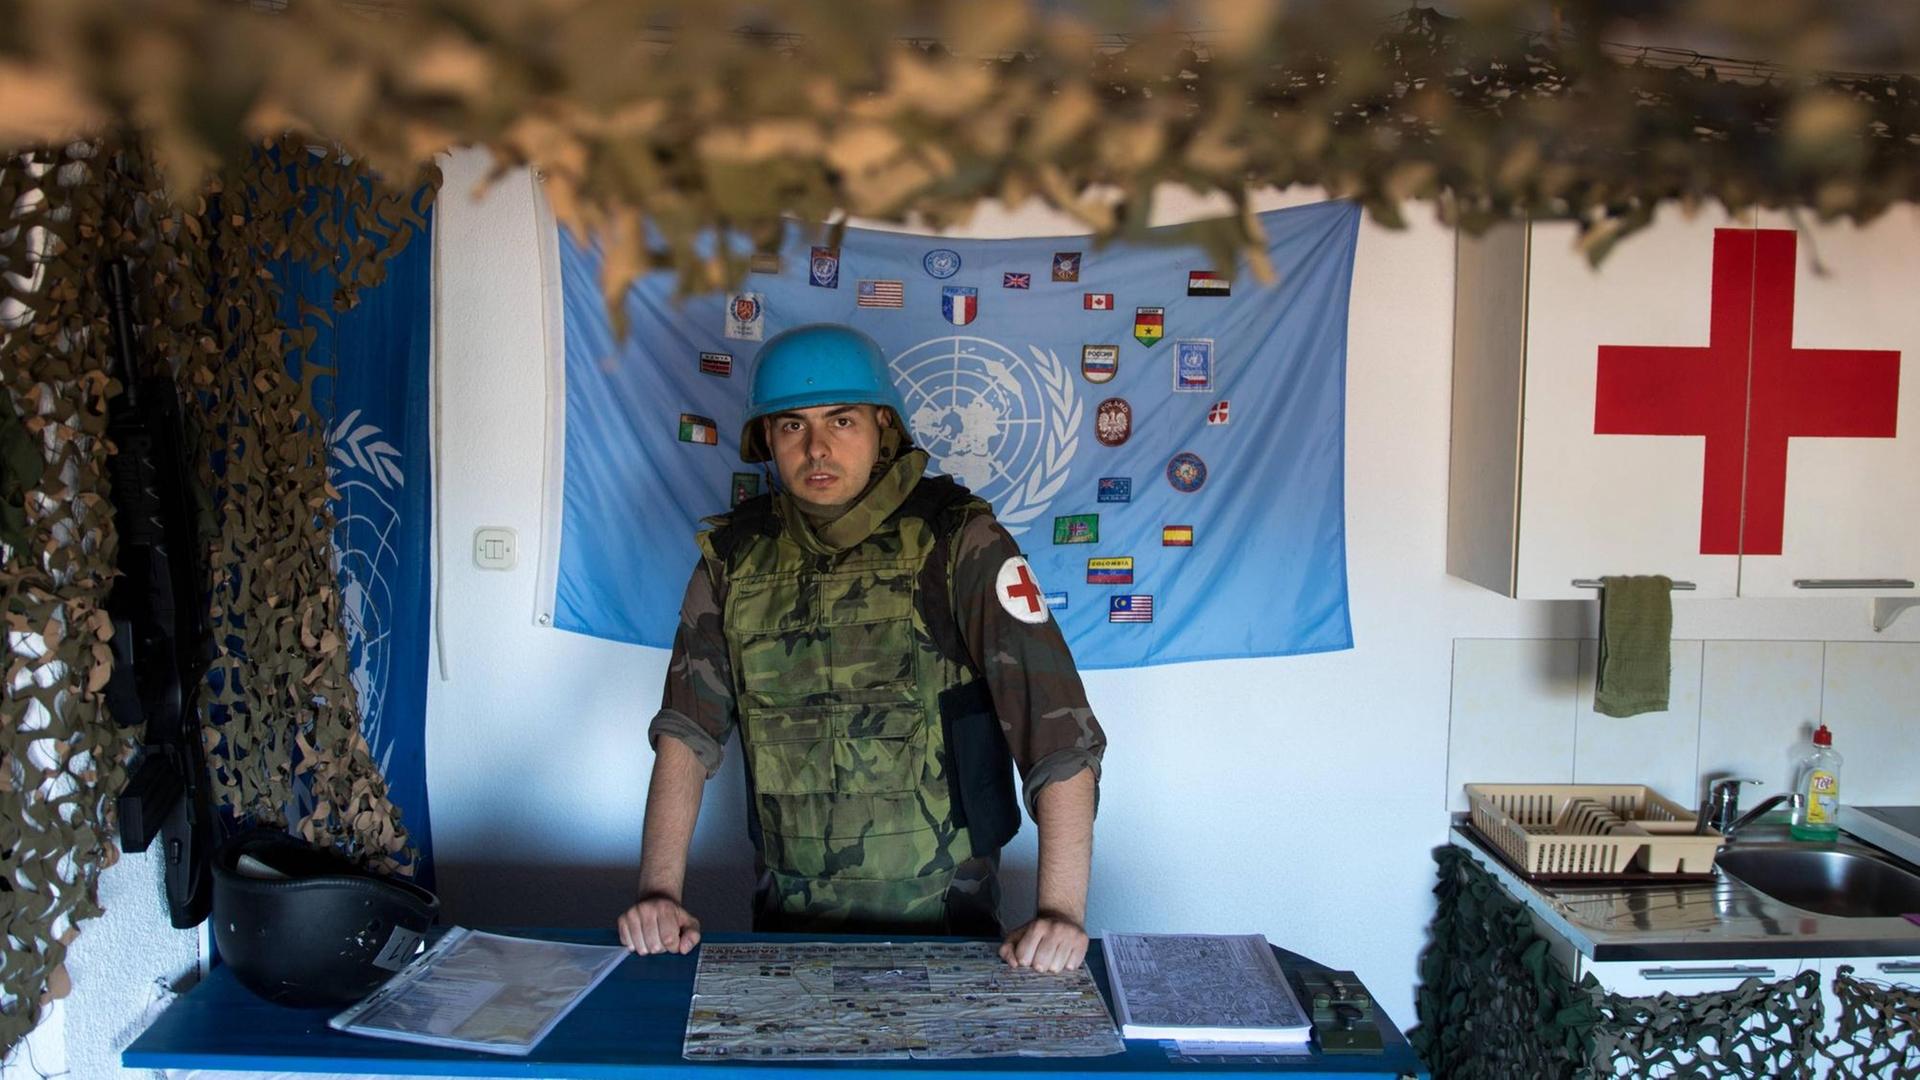 26.06.2017., Sarajevo - Arijan trägt die Uniform eines UN-Blauhelm-Soldaten: Stahlhelm, kugelsichere Weste, Springerstiefel. In diesem Aufzug empfängt er seine Hostel-Gäste.